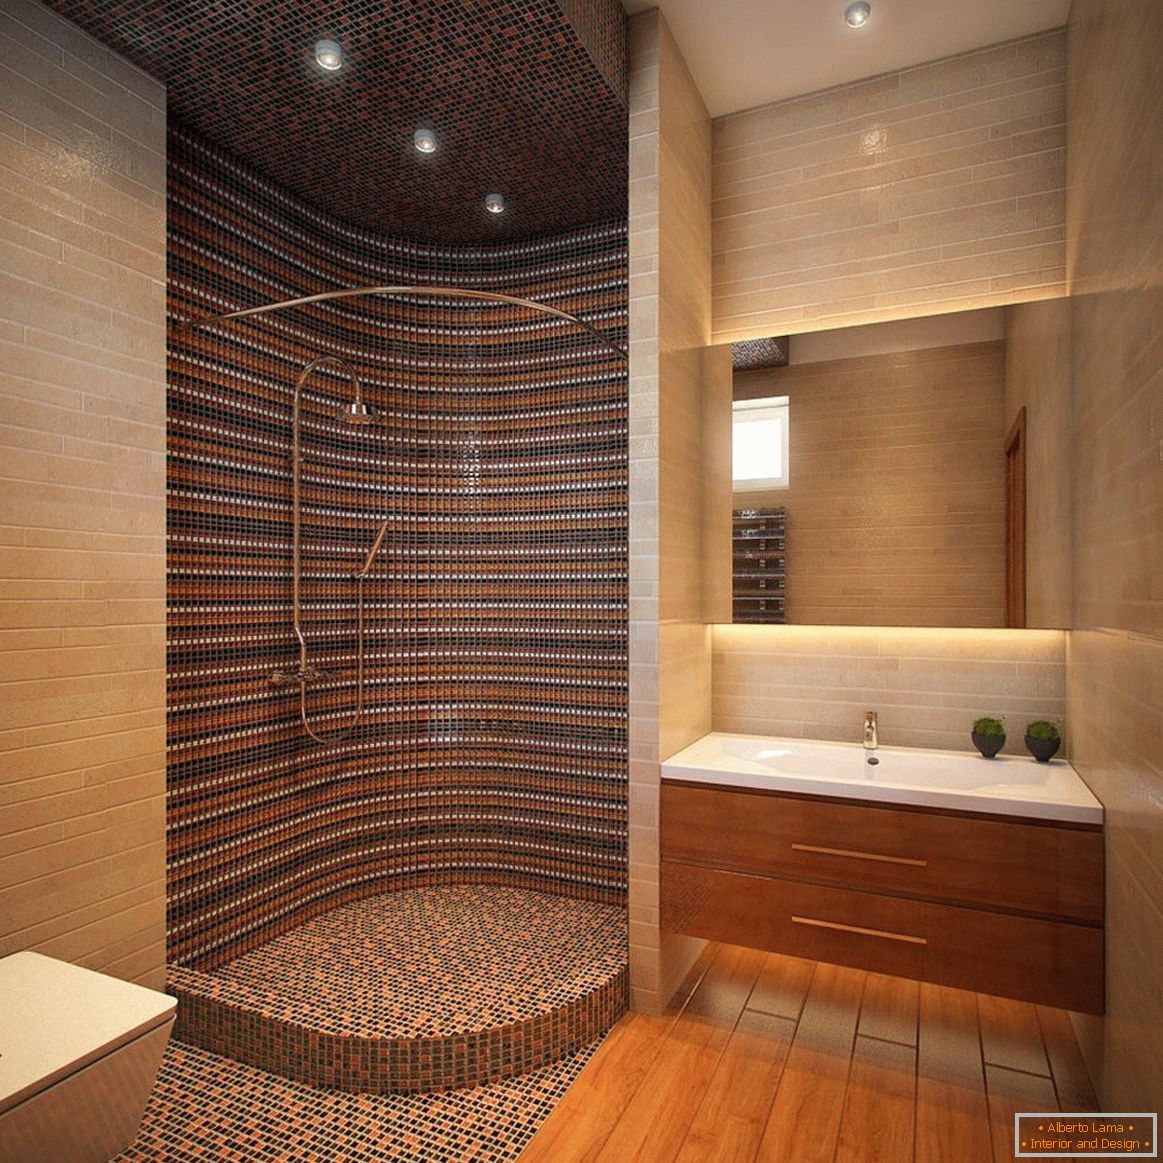 Decorazione per box doccia con mosaico